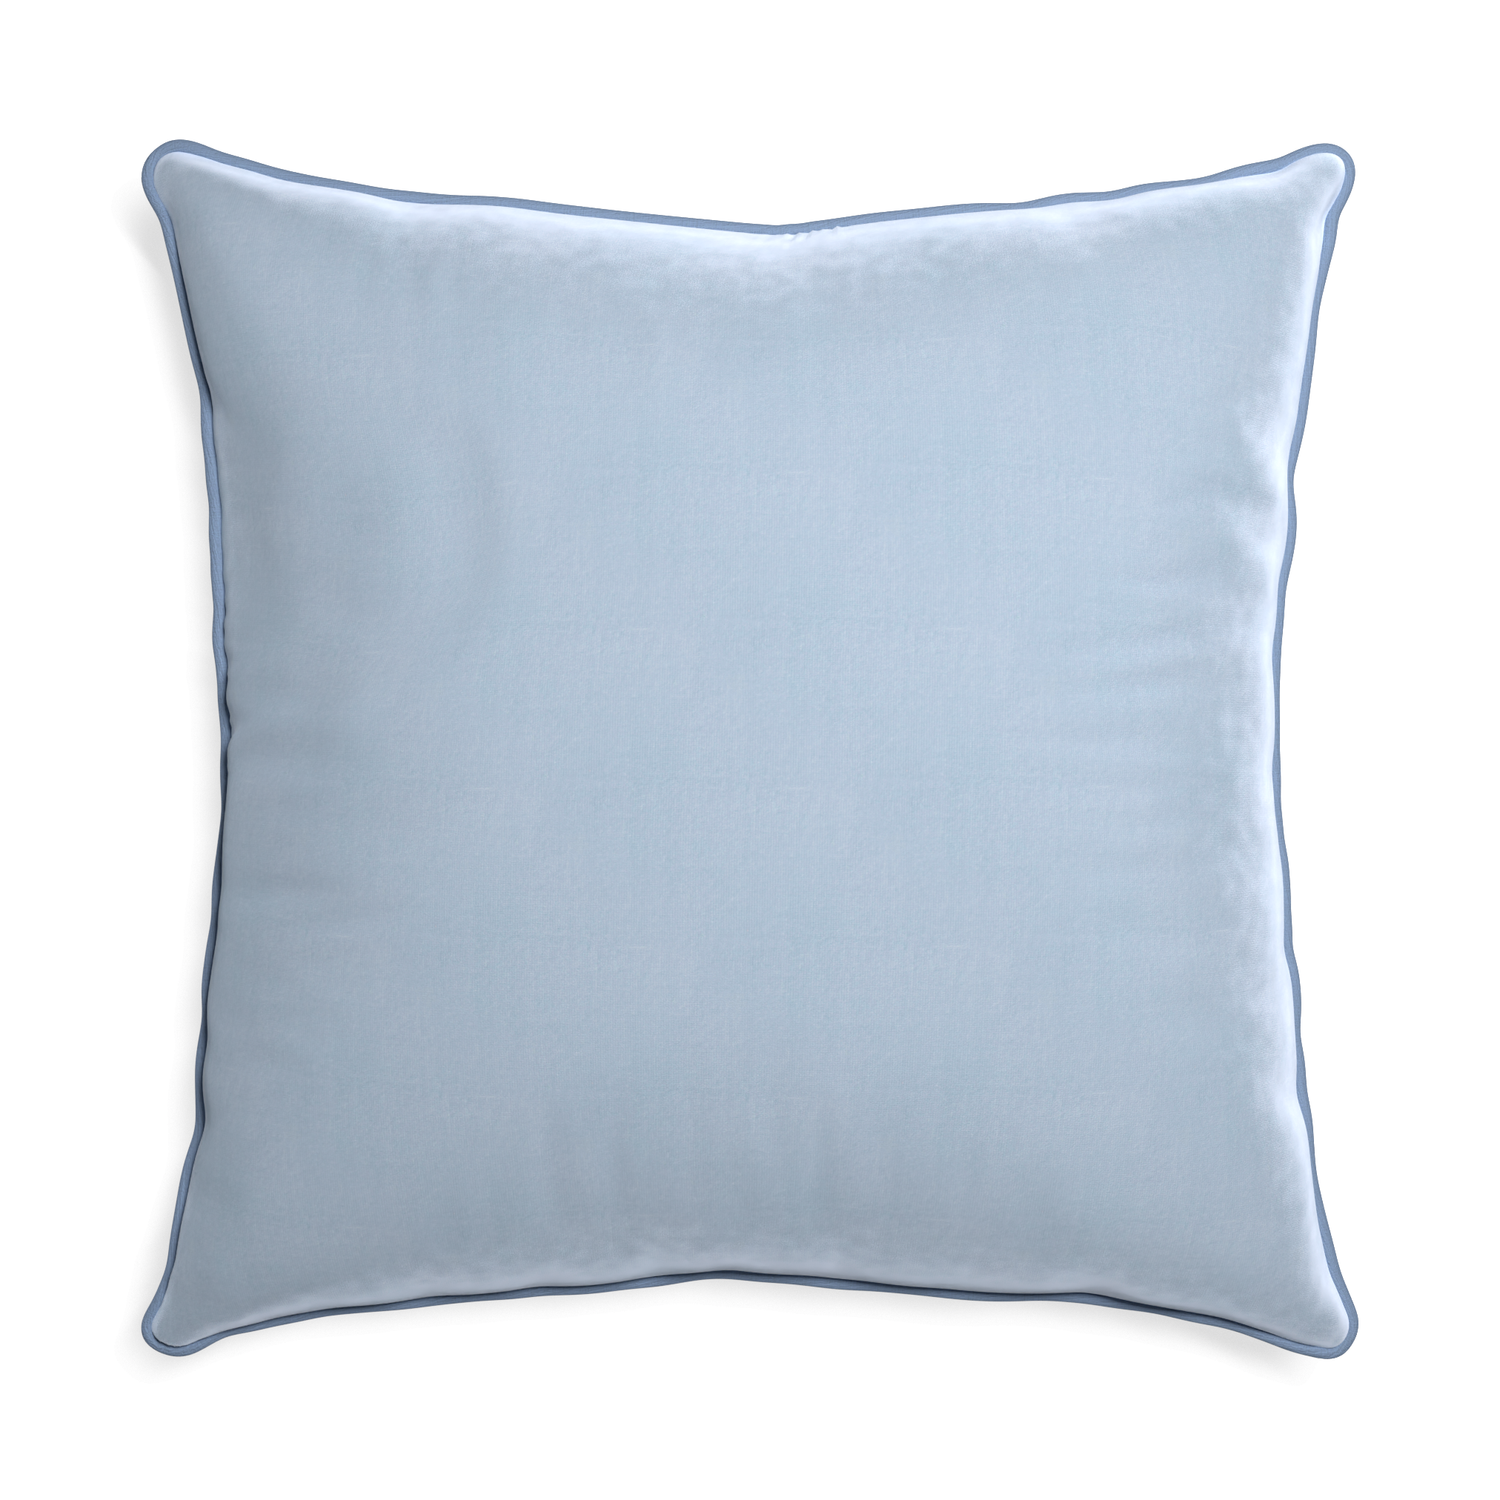 Euro-sham sky velvet custom pillow with sky piping on white background